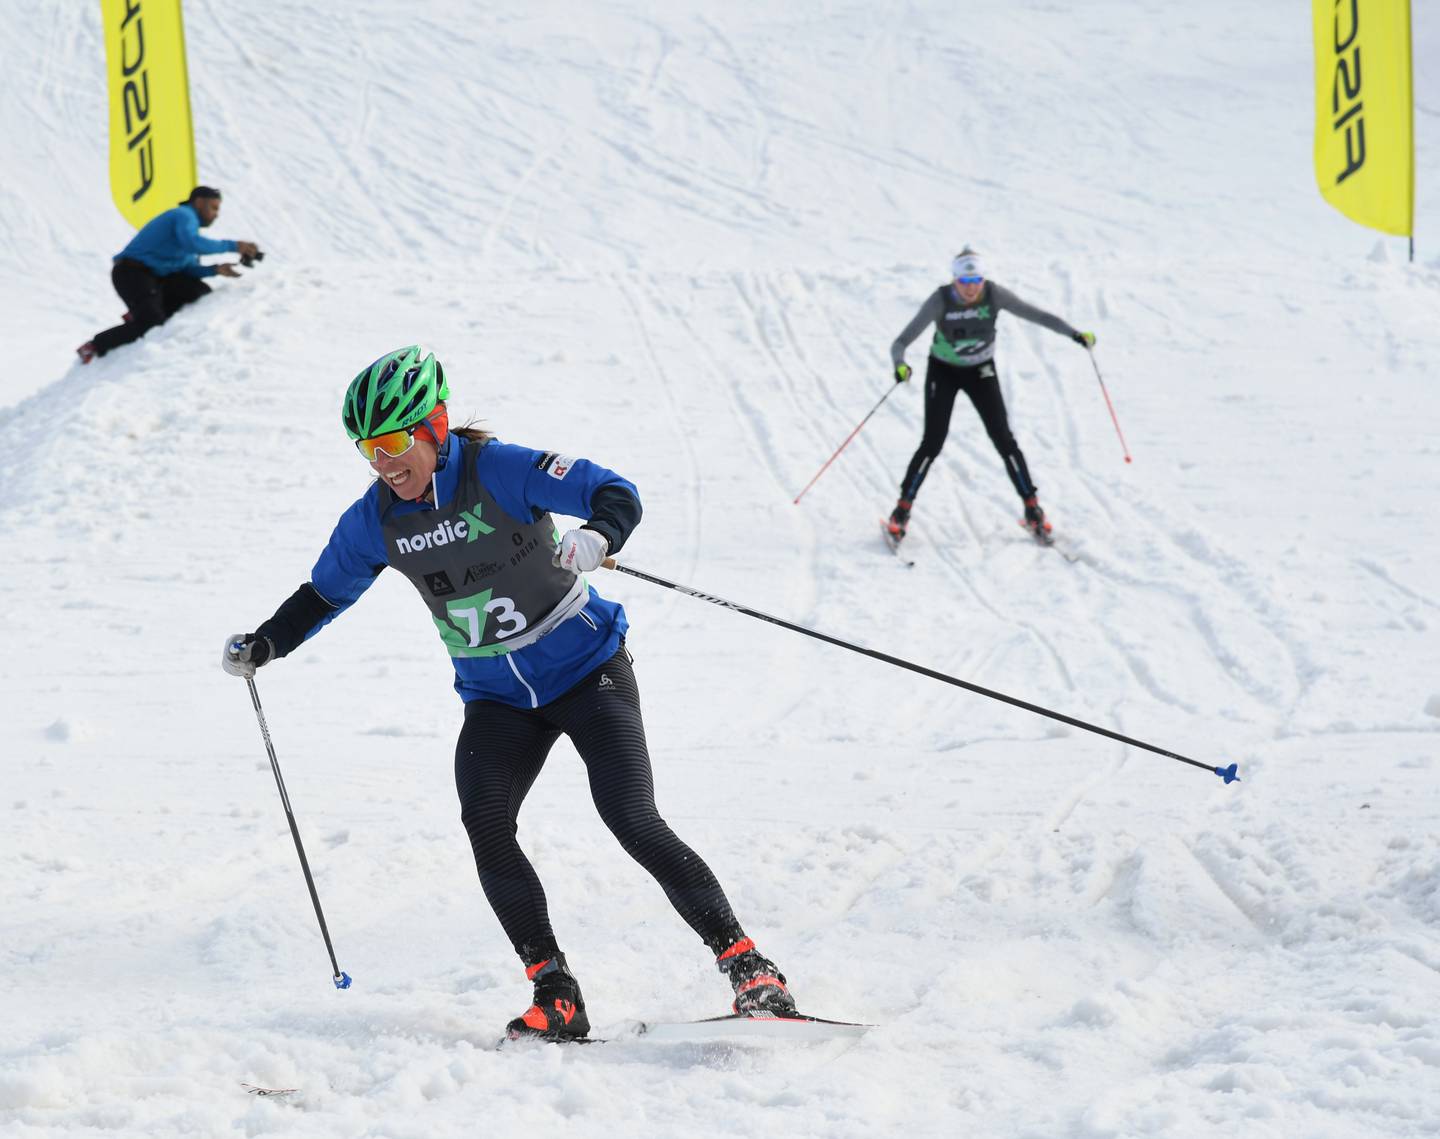 Cross Country Ski, Nordic-Cross, NordicX, Hilltop Ski Area, Ski, Olympic skier Rosie Brennan